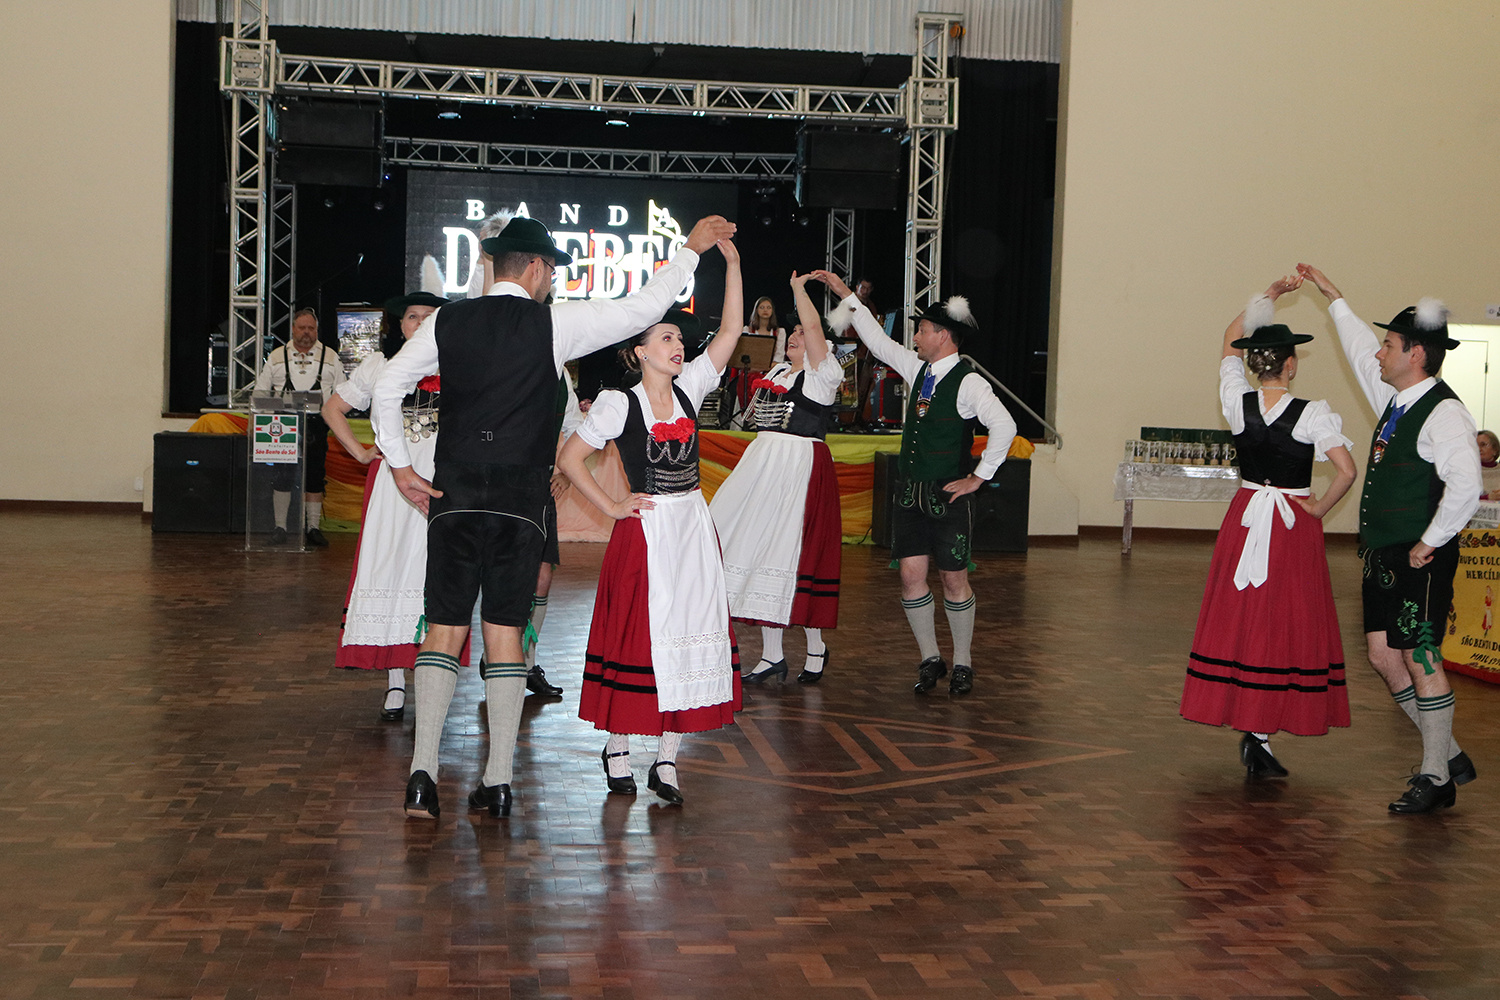 Grupos folclóricos reunidos na Trachtenfest – Festa dos Trajes